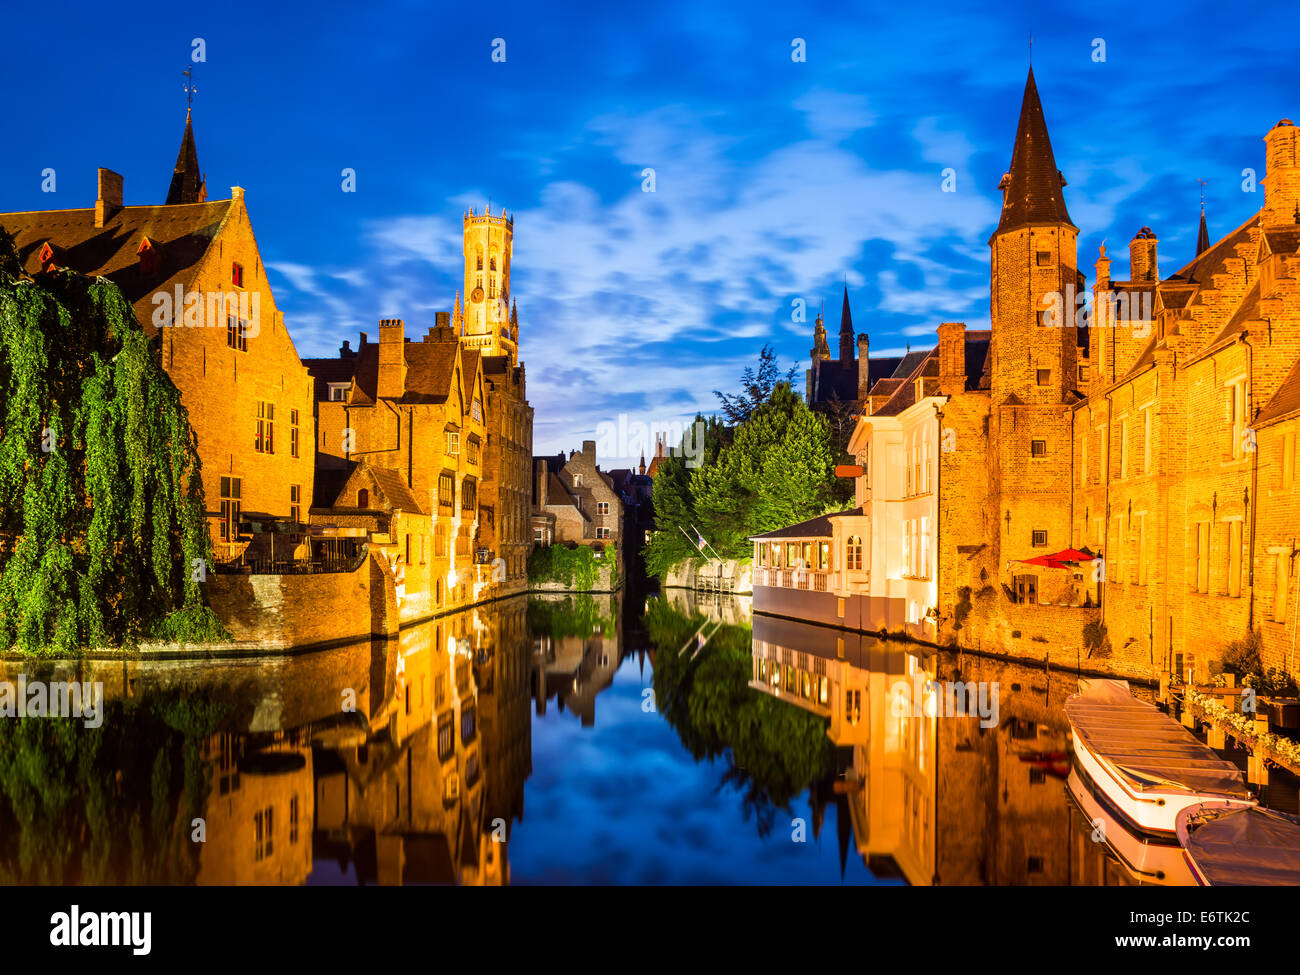 Bruges, Belgium. Image with Rozenhoedkaai in Brugge, Dijver river canal twilight and Belfort (Belfry) tower. Stock Photo